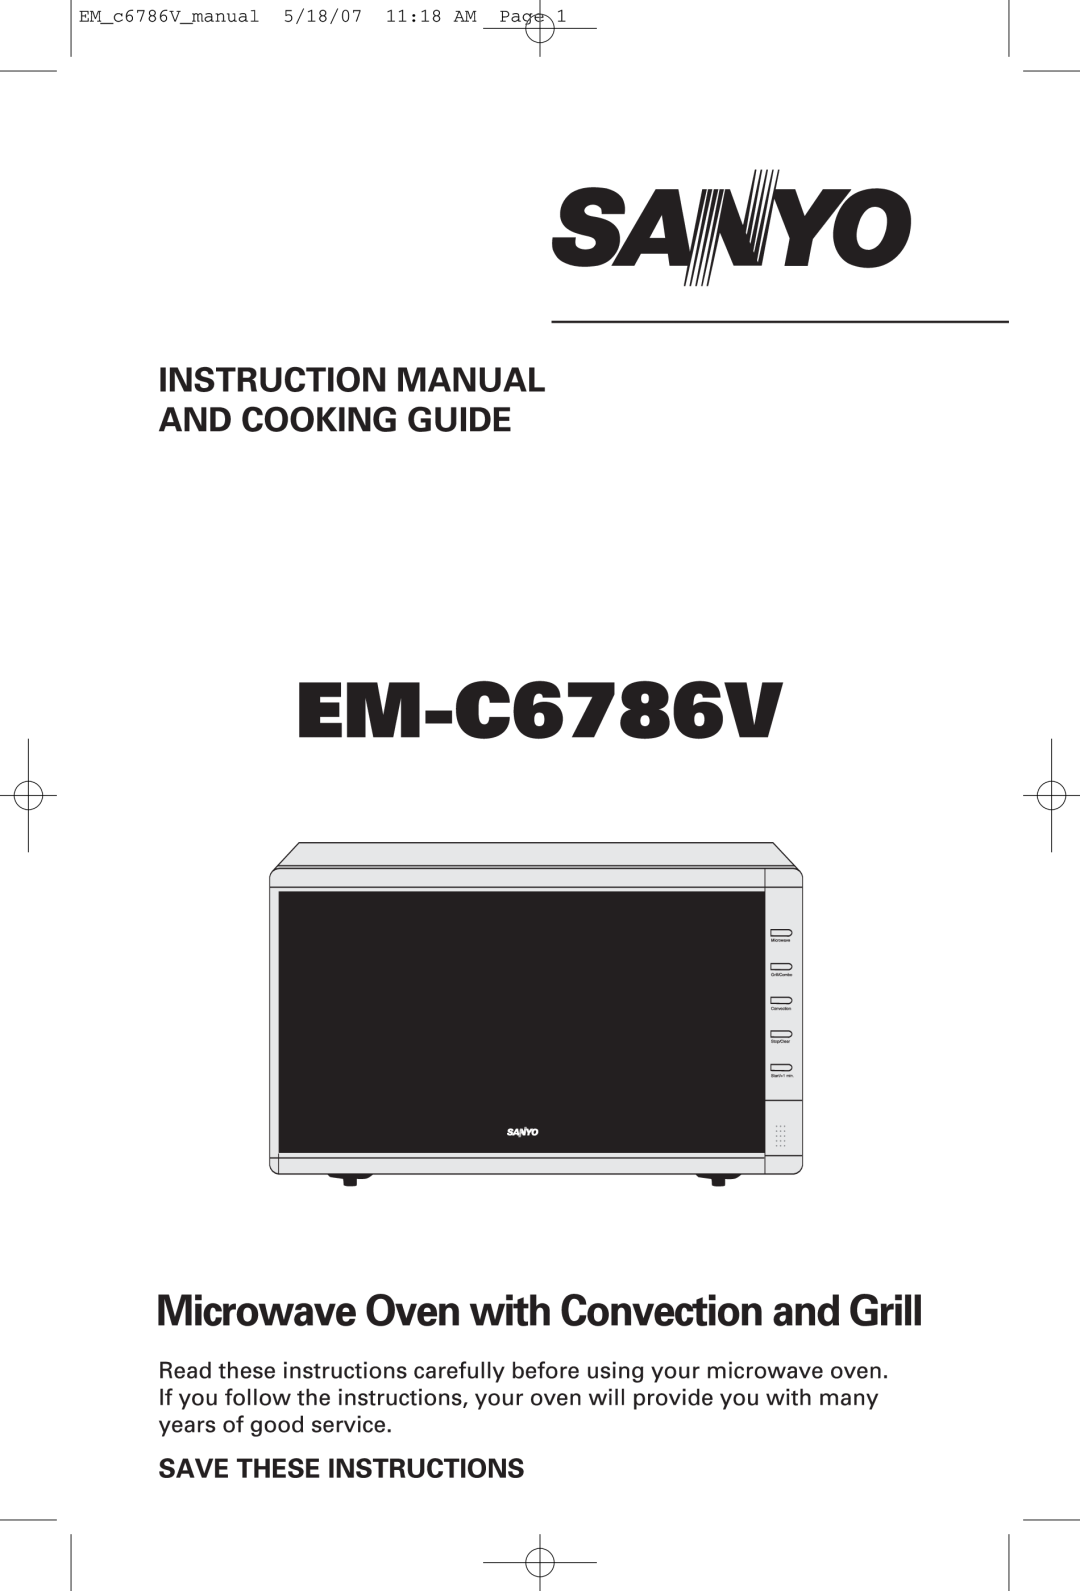 Sanyo EM-C6786V manual EM_c6786V_manual 5/18/07 11:18 AM Page 